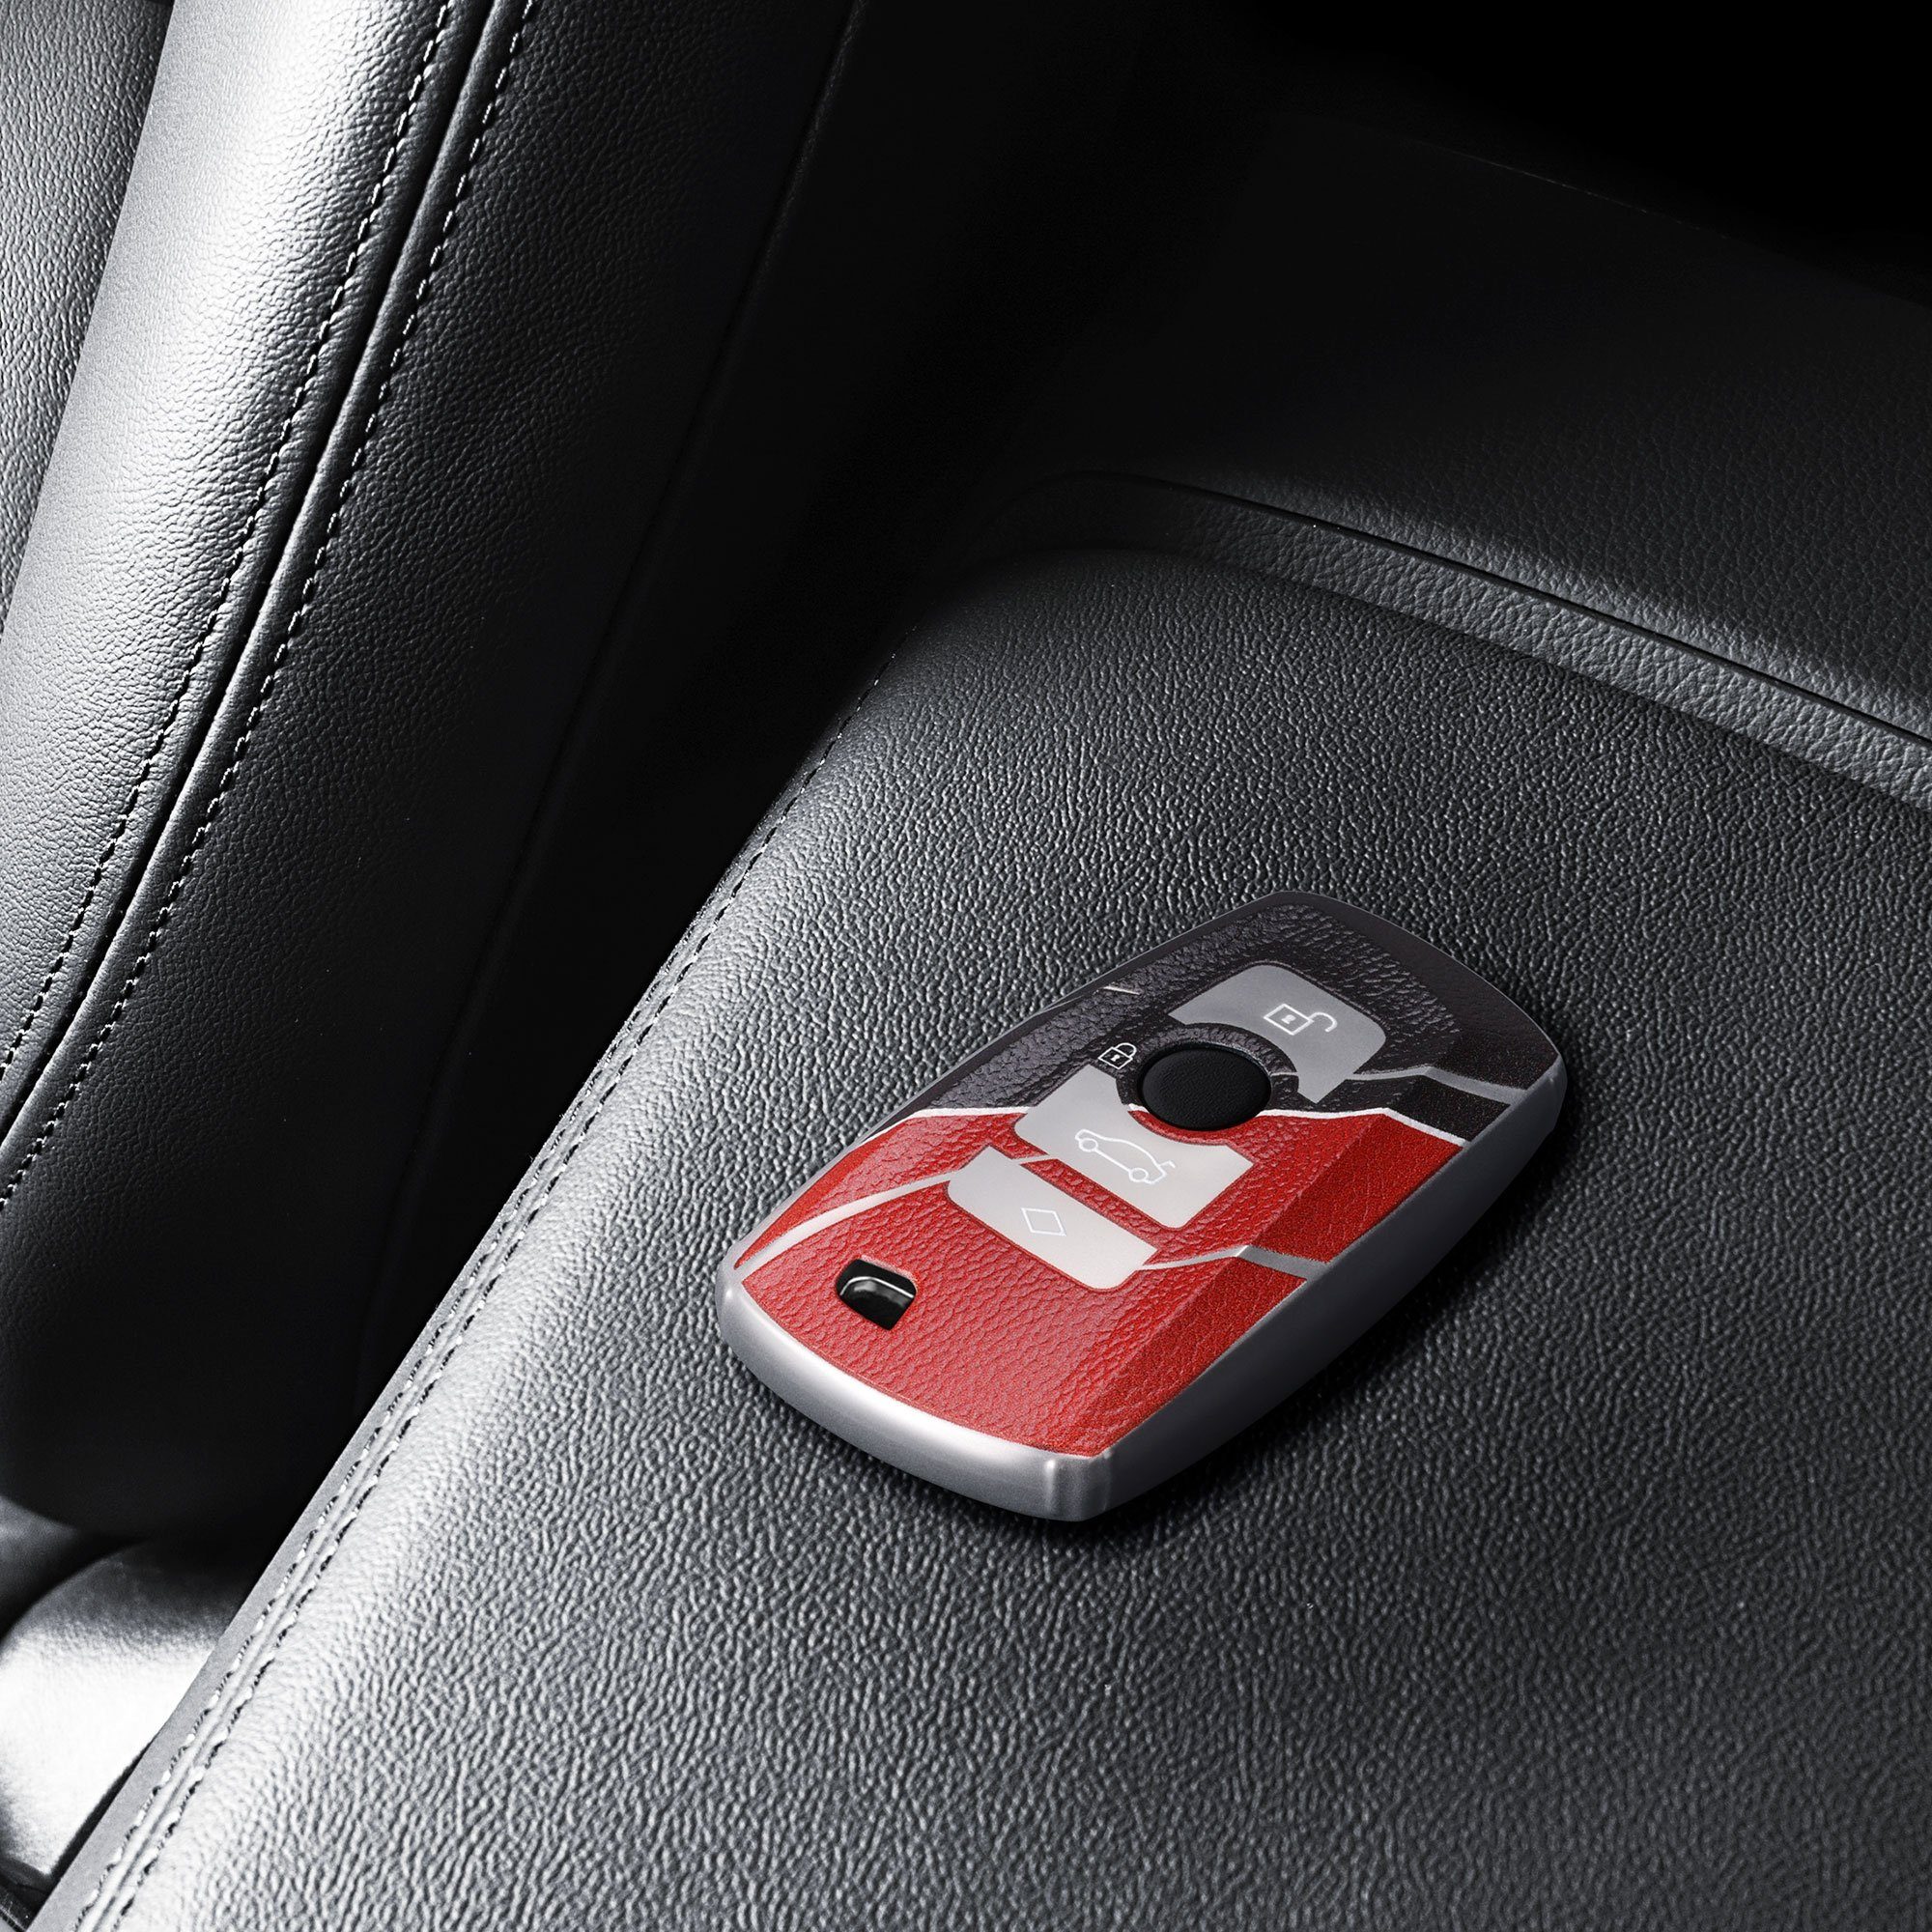 kwmobile Autoschlüssel Hülle kompatibel mit BMW 3-Tasten Funk Autoschlüssel  (nur Keyless Go) - Schlüsselhülle Cover Rot Schwarz